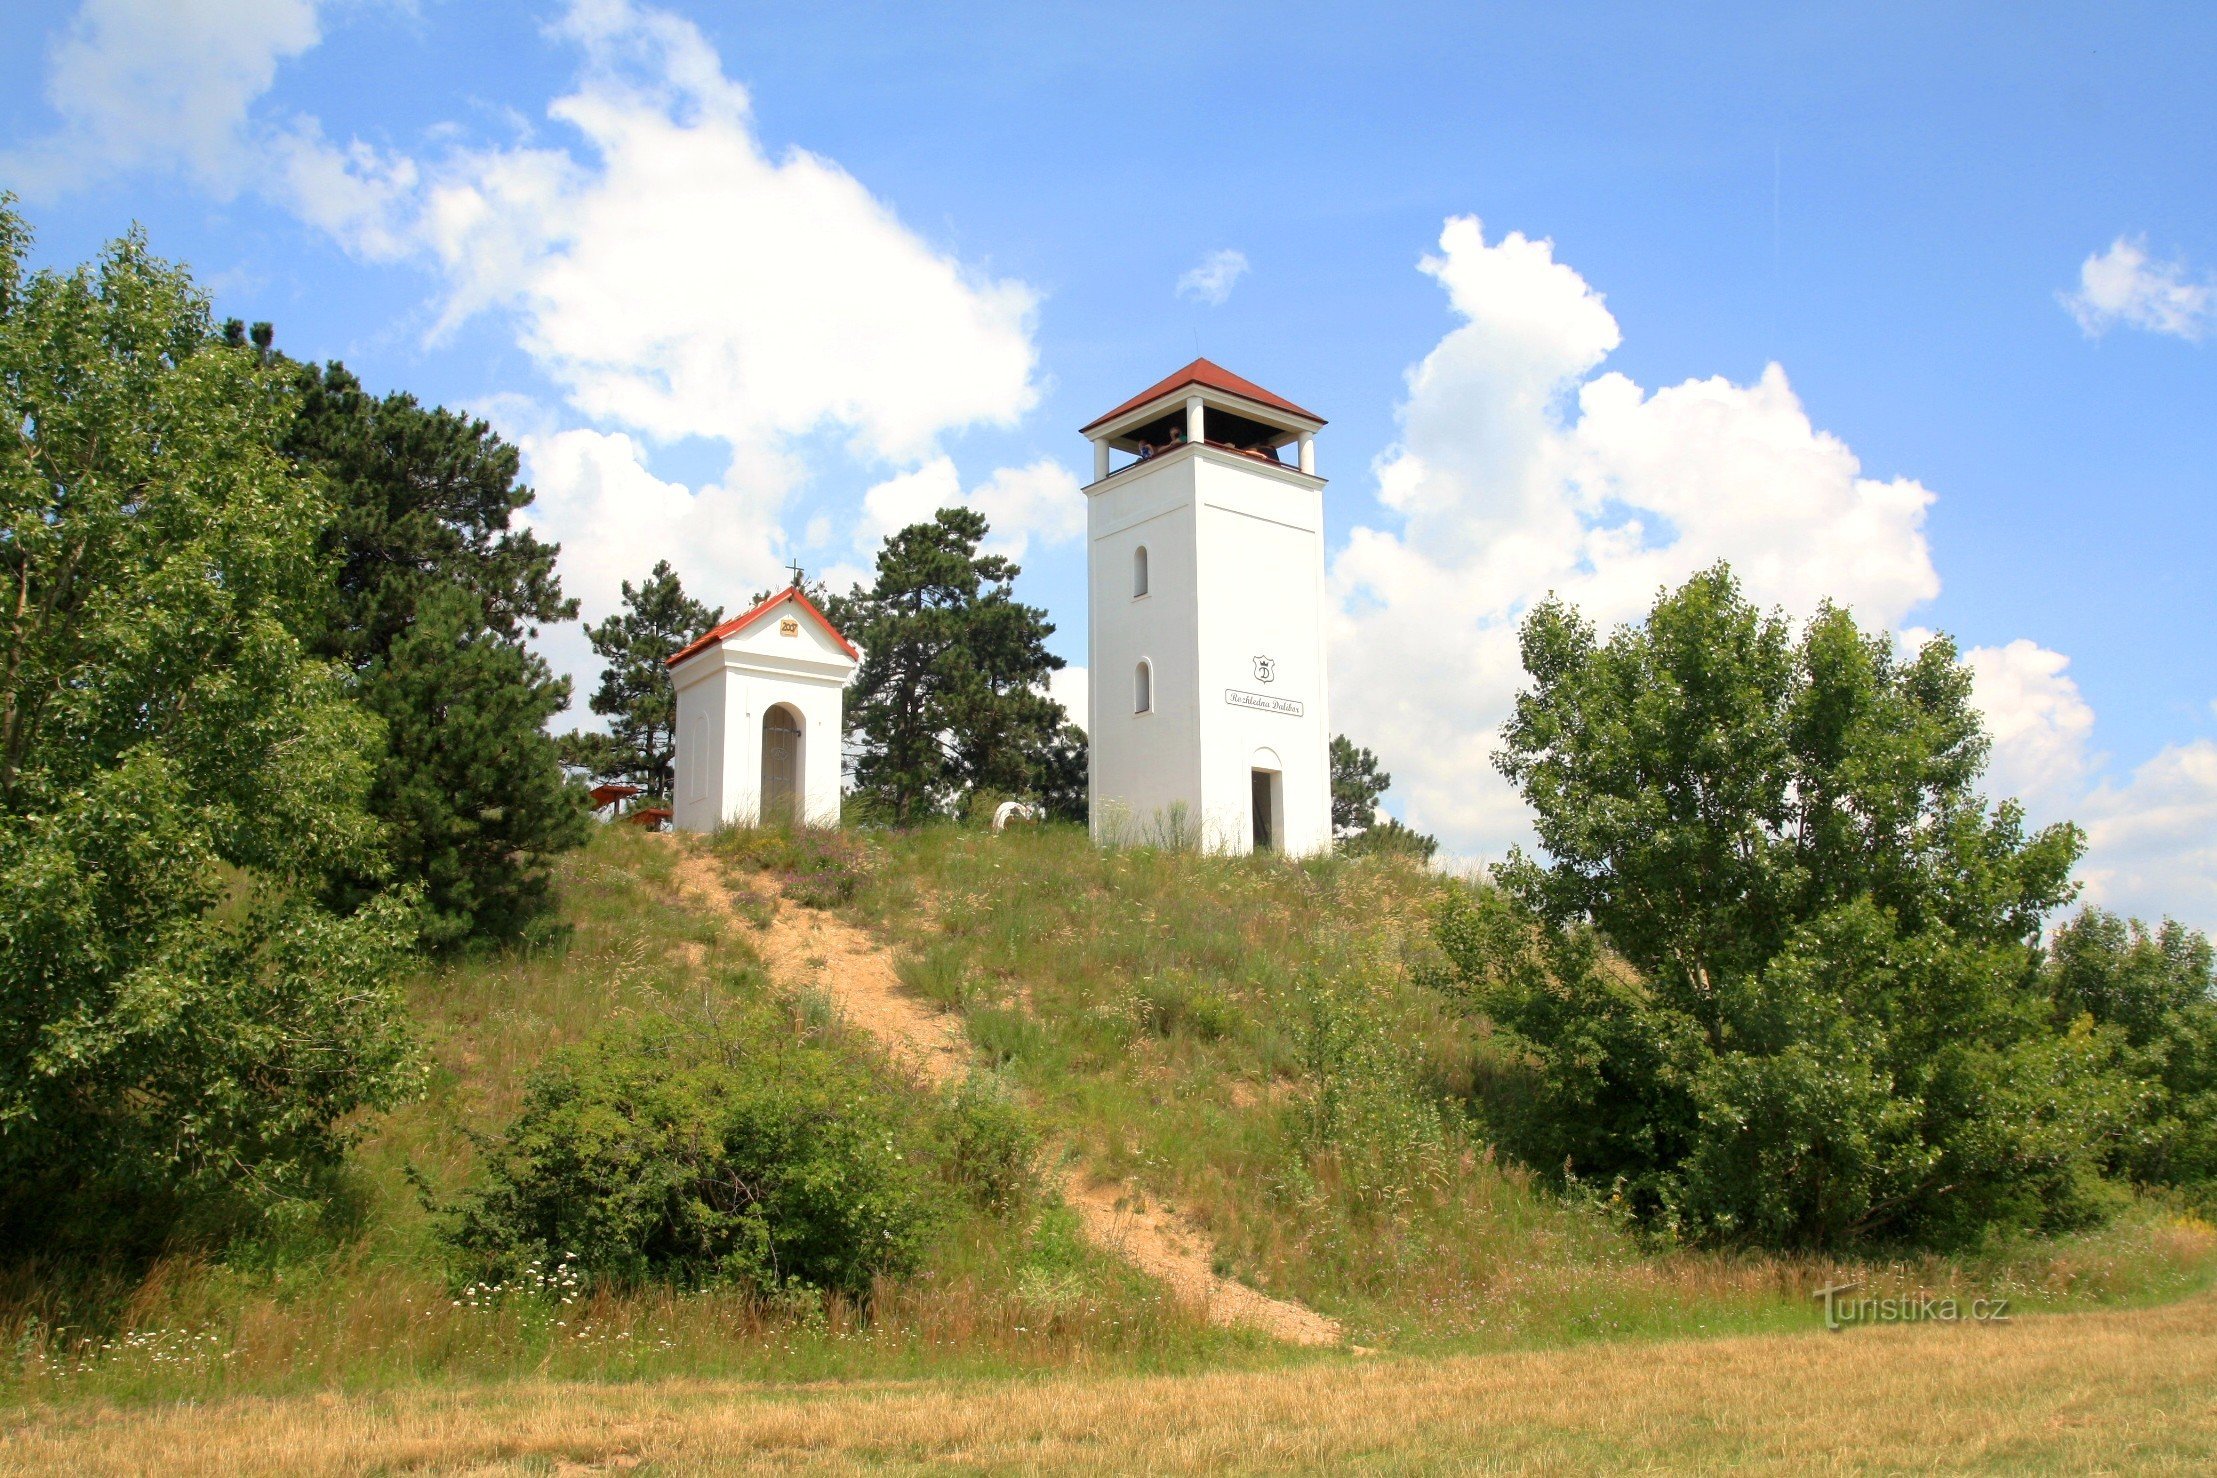 O alto do Calvário com a capela de St. Urbana e a torre de observação de Dalibor